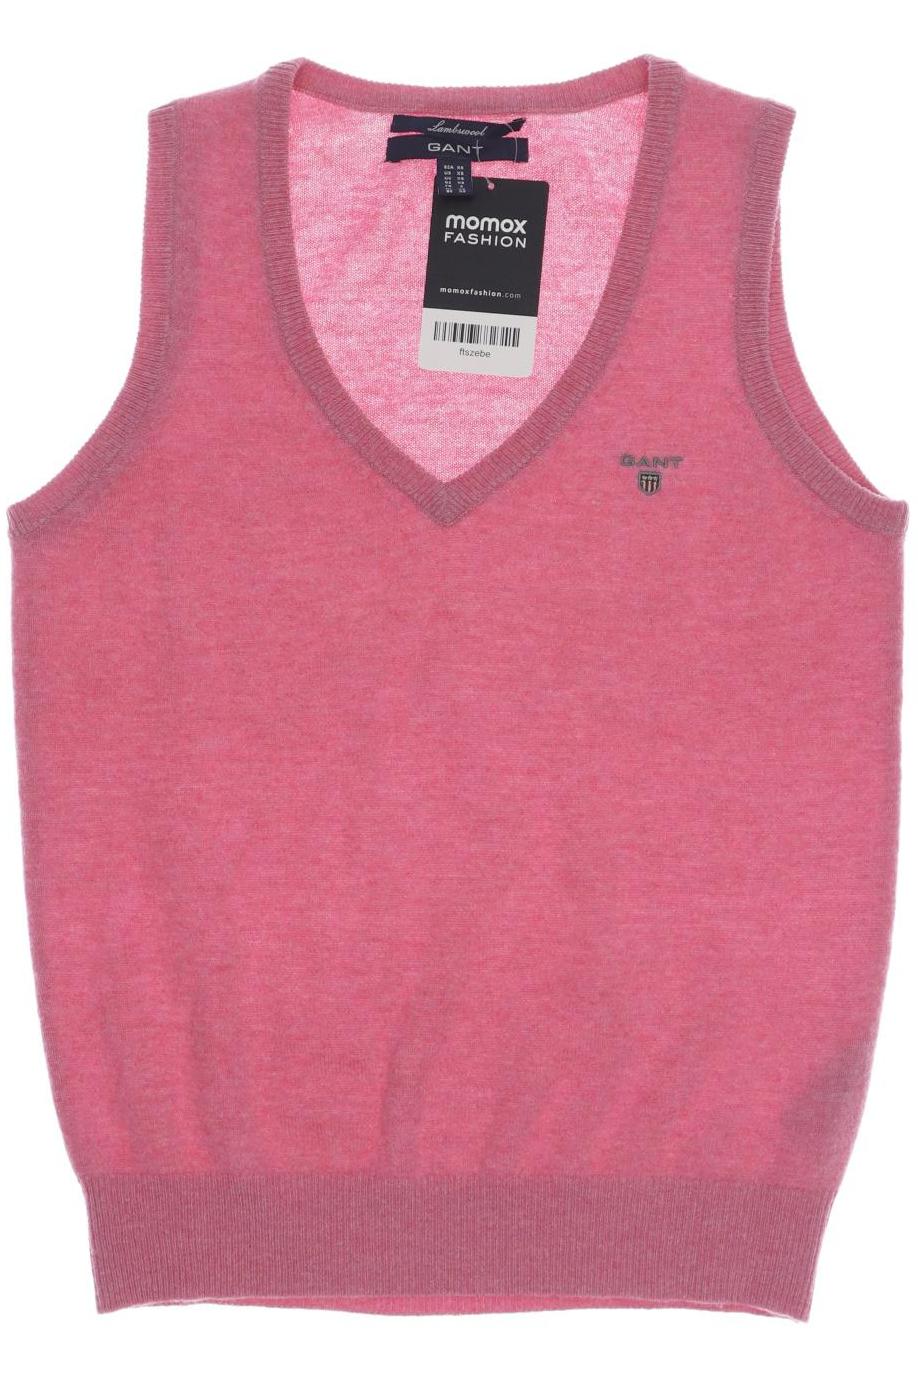 Gant Damen Pullover, pink, Gr. 34 von Gant